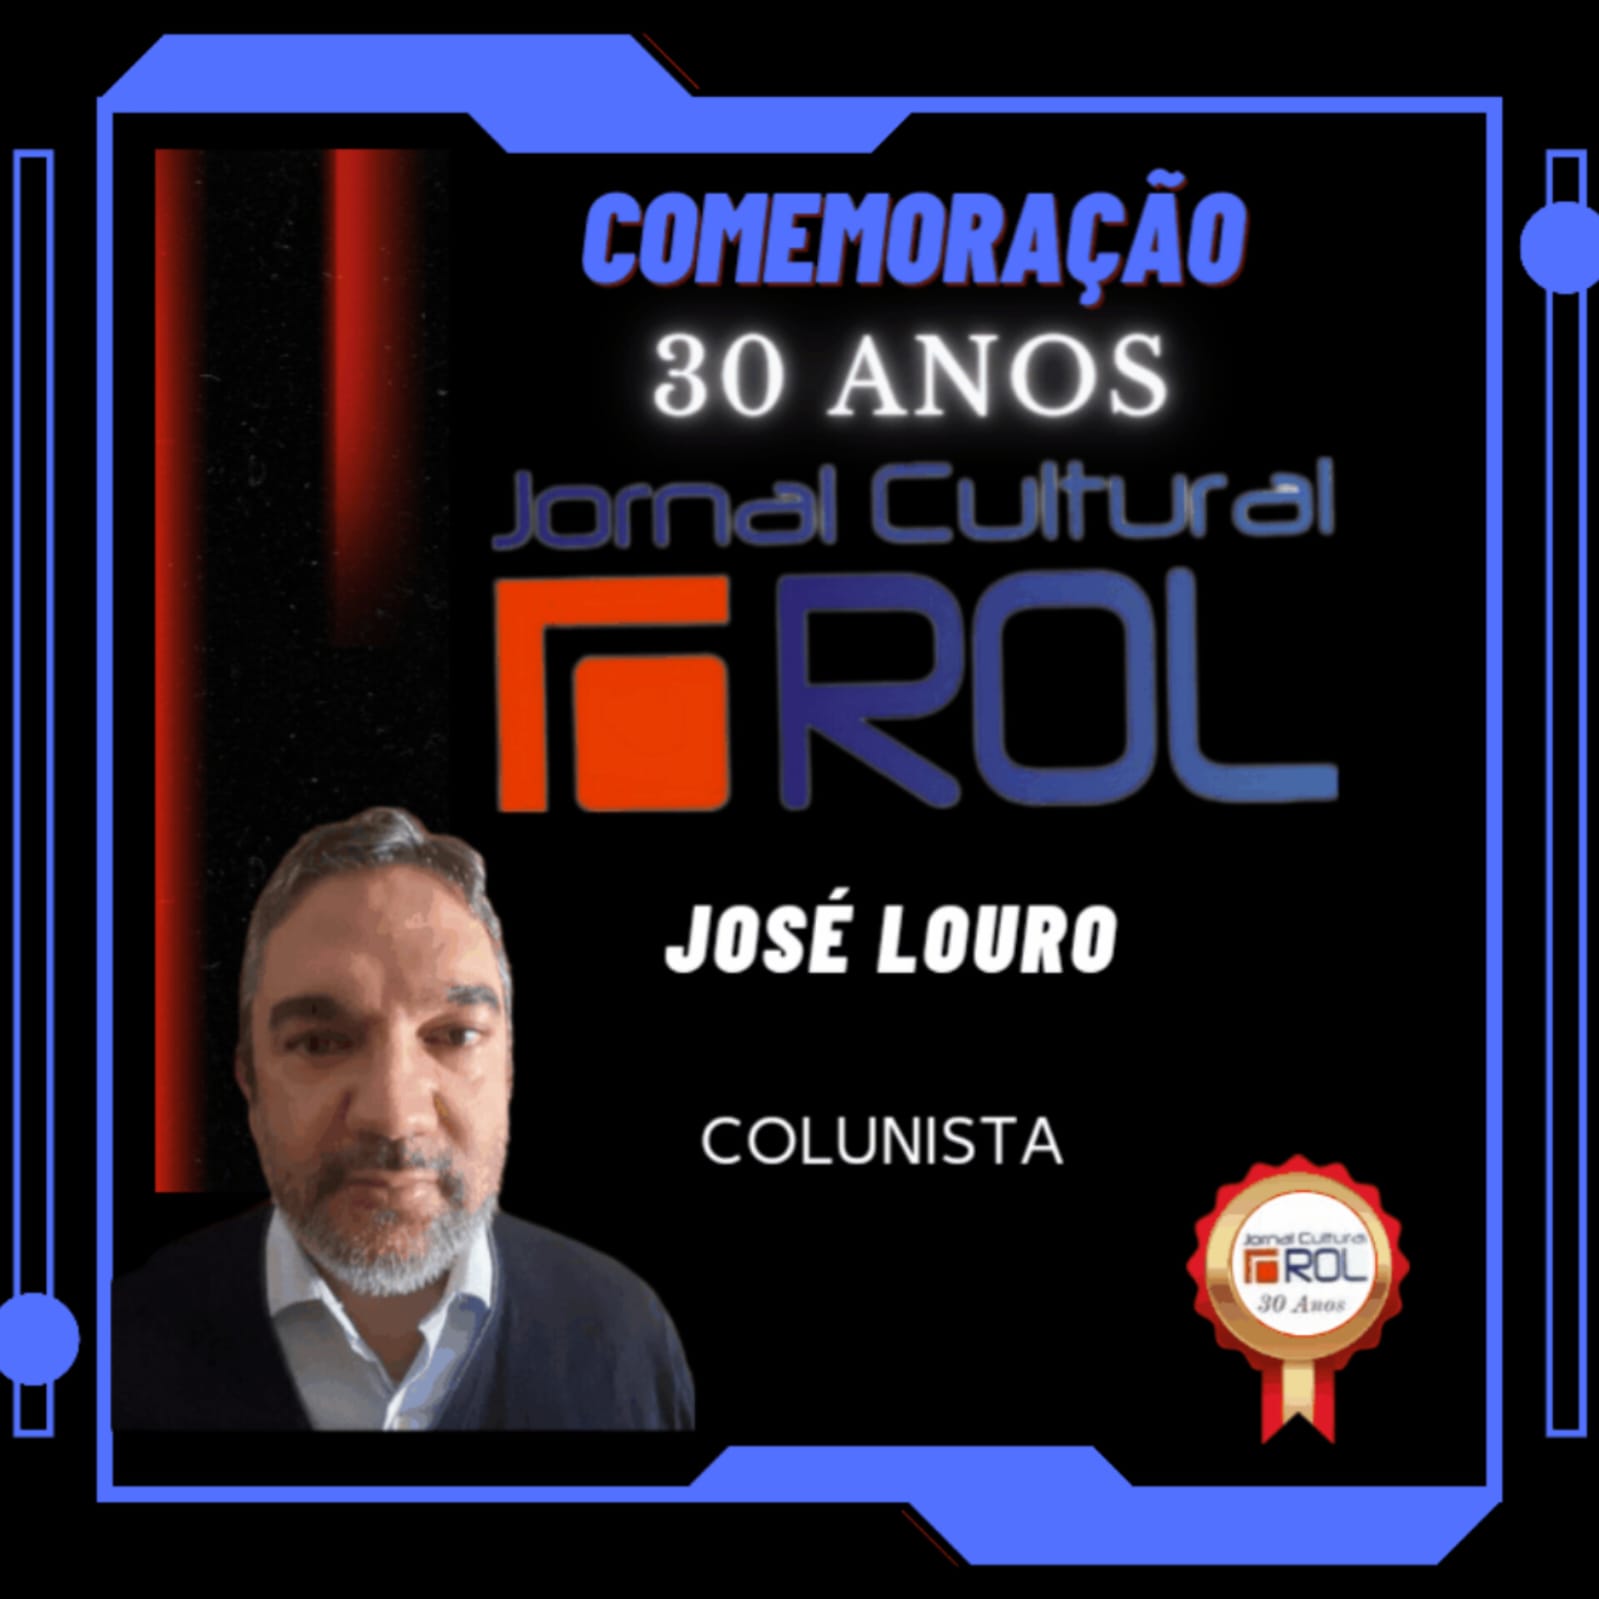 Card comemorativo dos 30 anos do Jornal Cultural ROL - José Louro